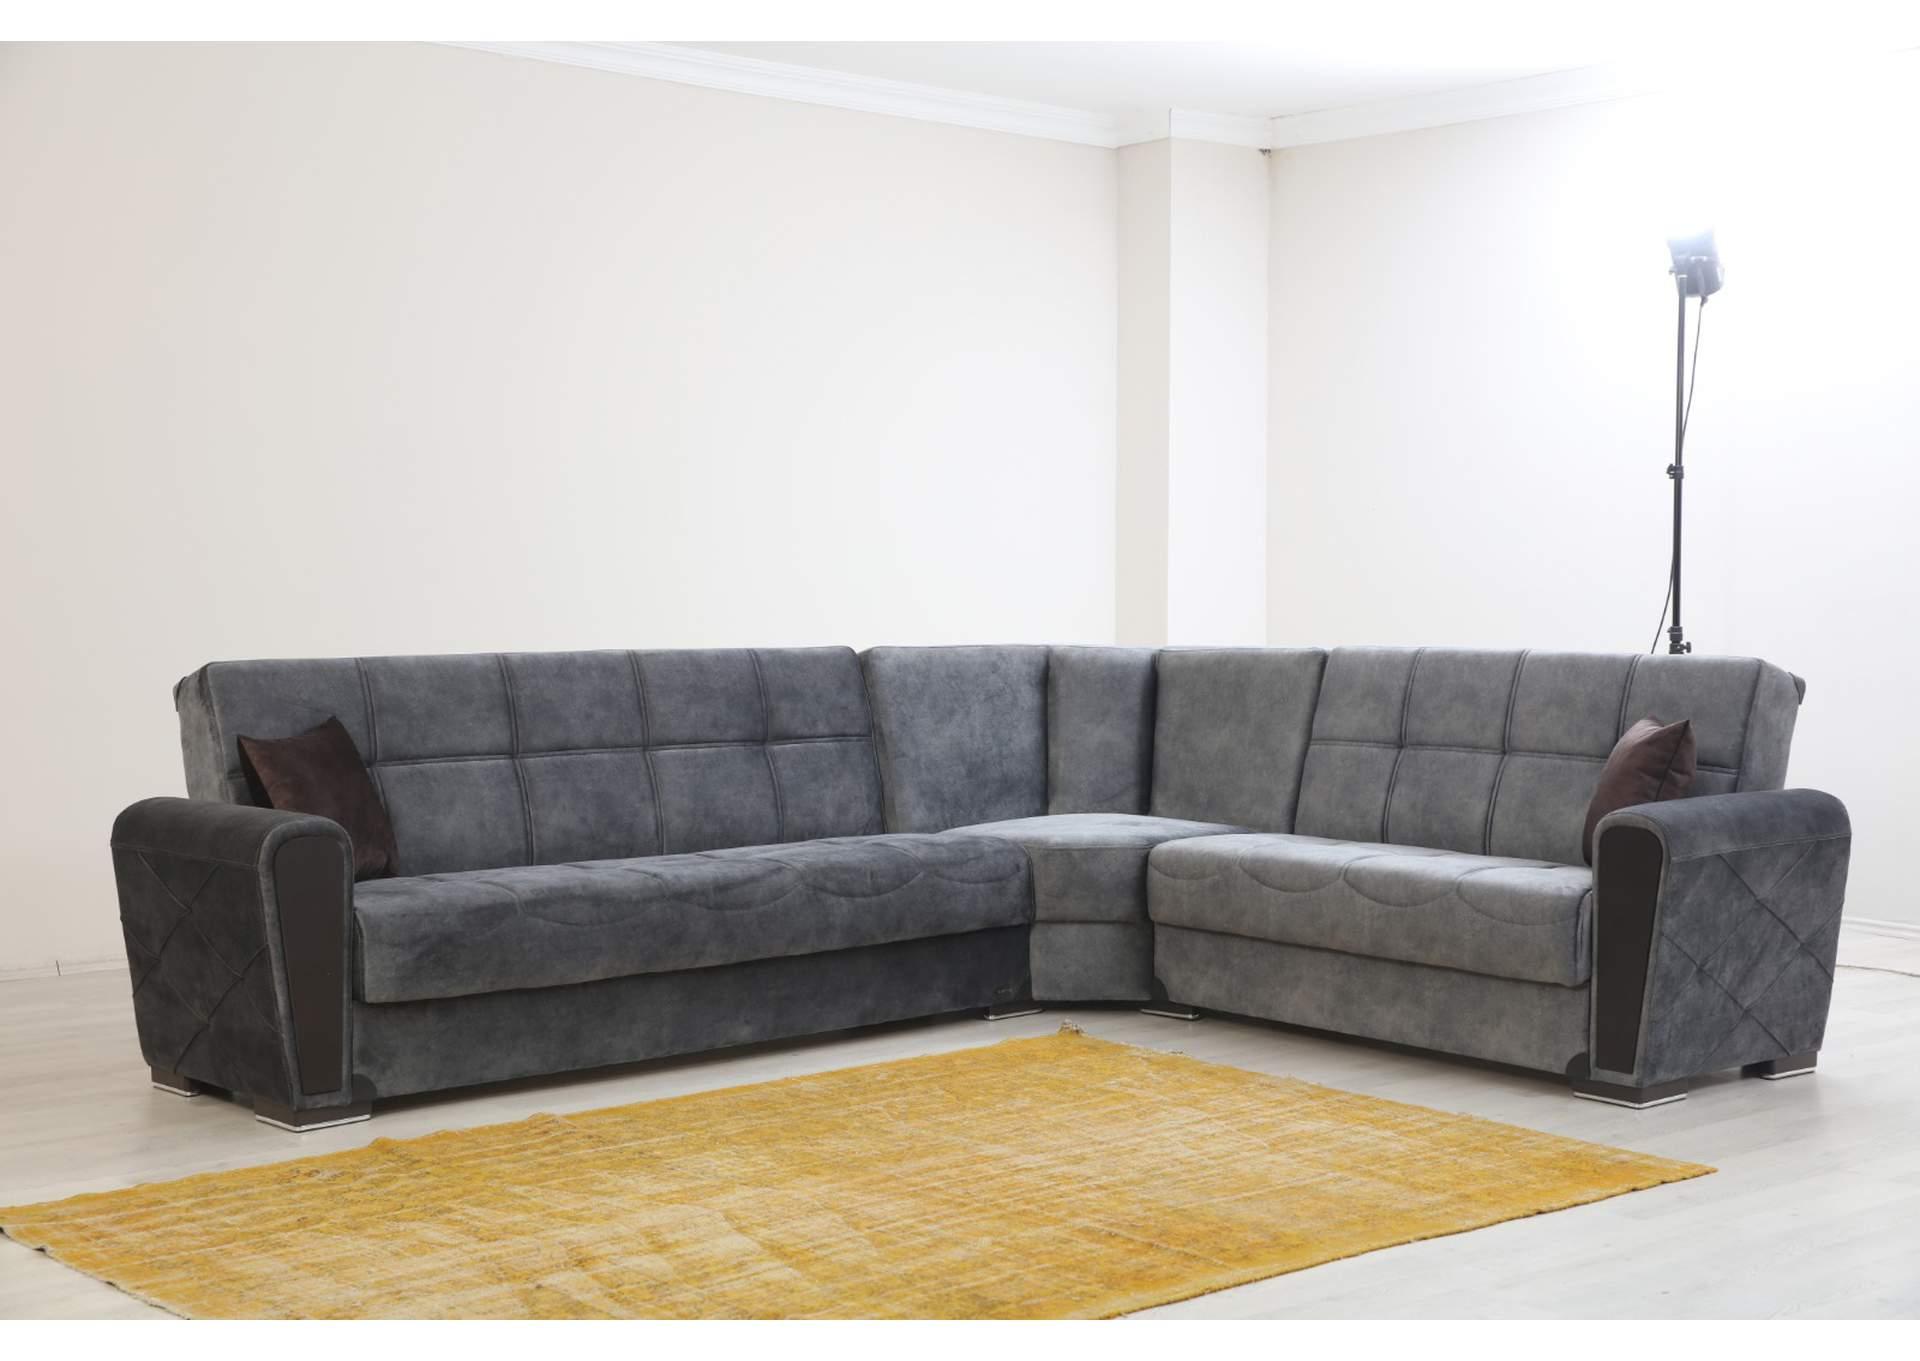 Alpha Furniture Sara Sectional Sofa